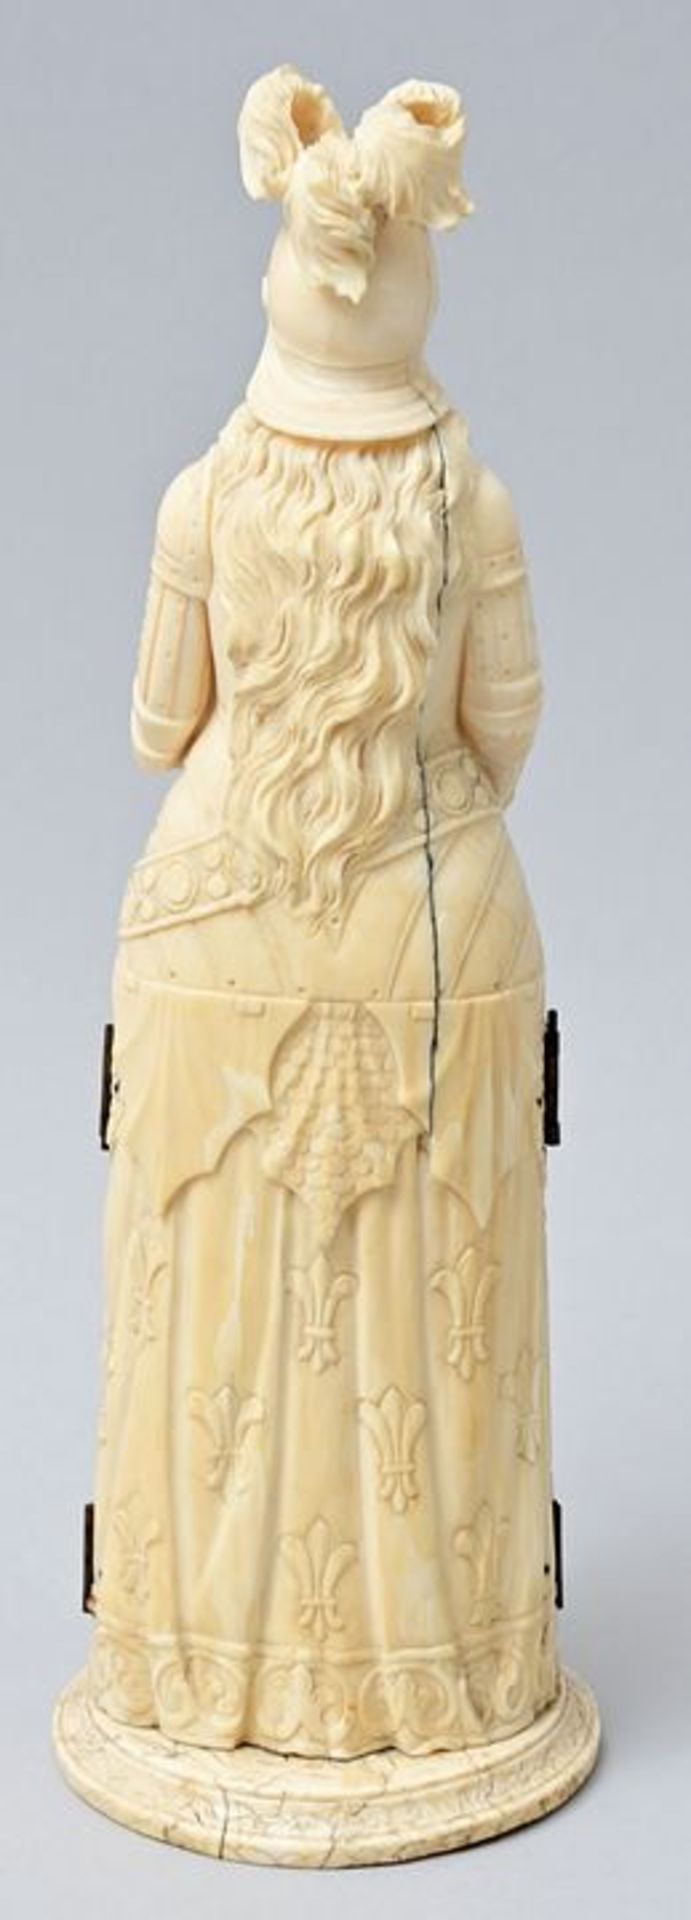 Figur Elfenbein klappbar/ ivory triptych - Image 5 of 5